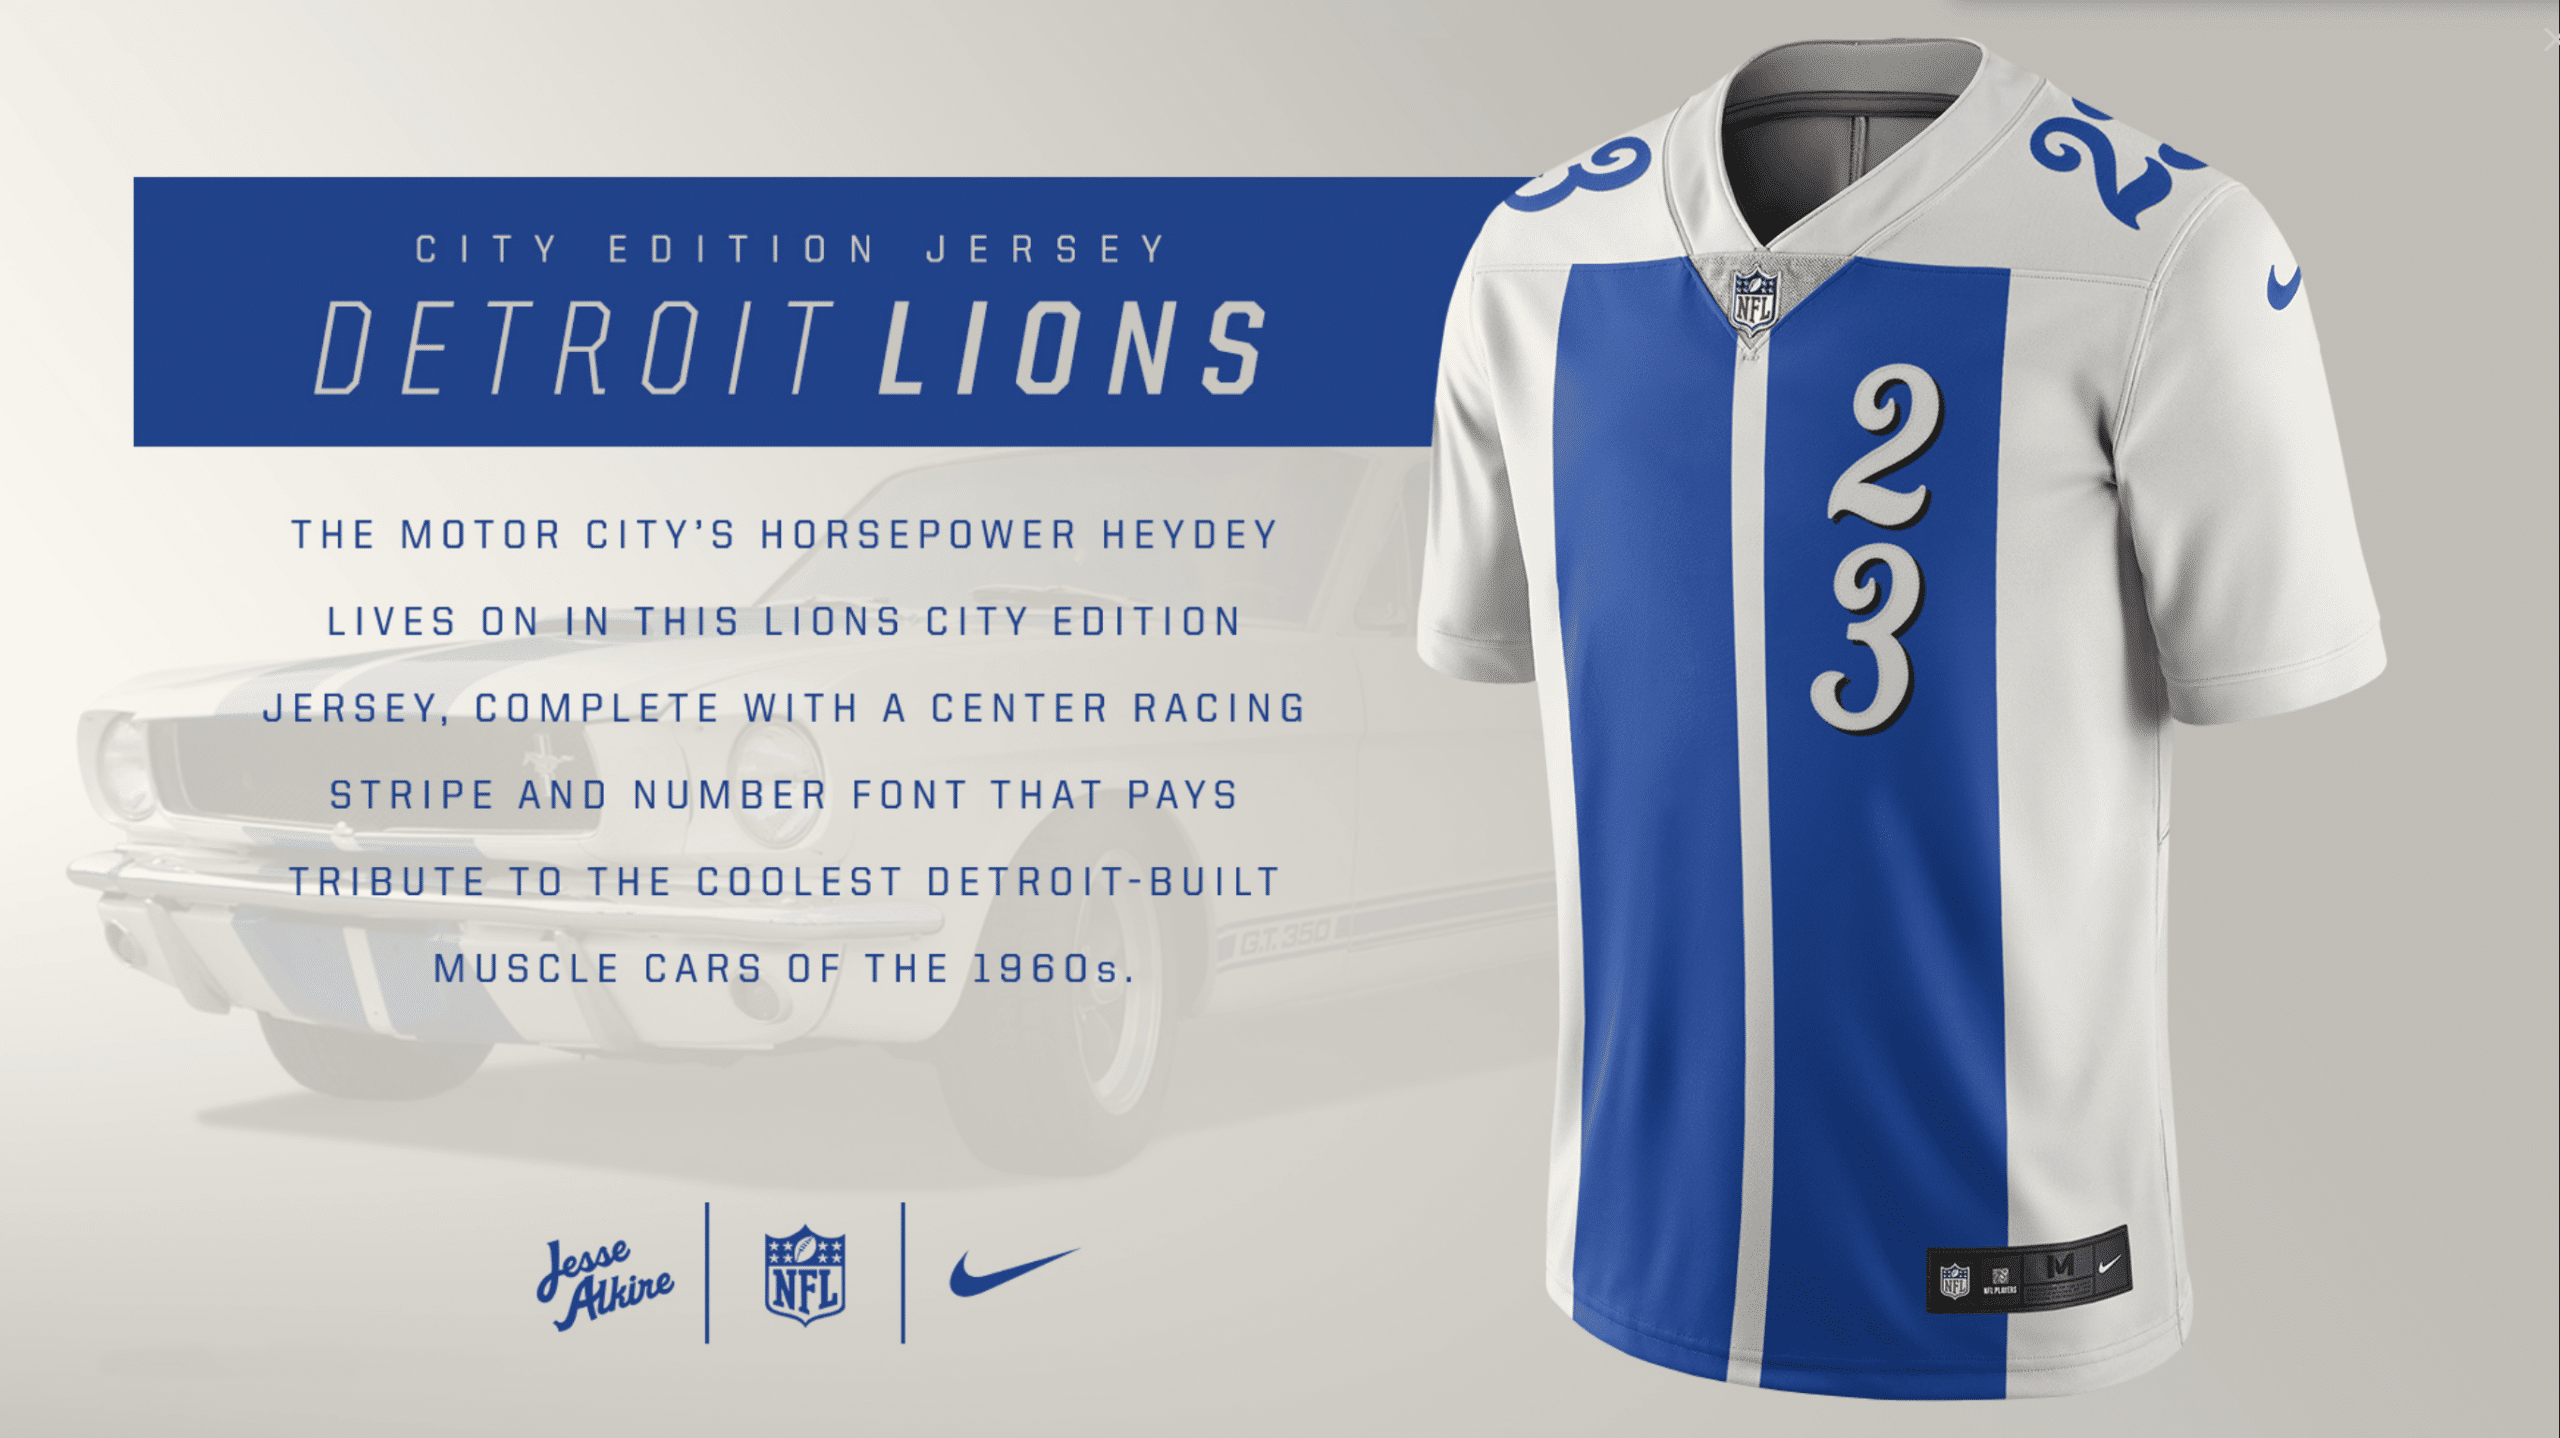 Detroit Lions, City Edition Jerseys